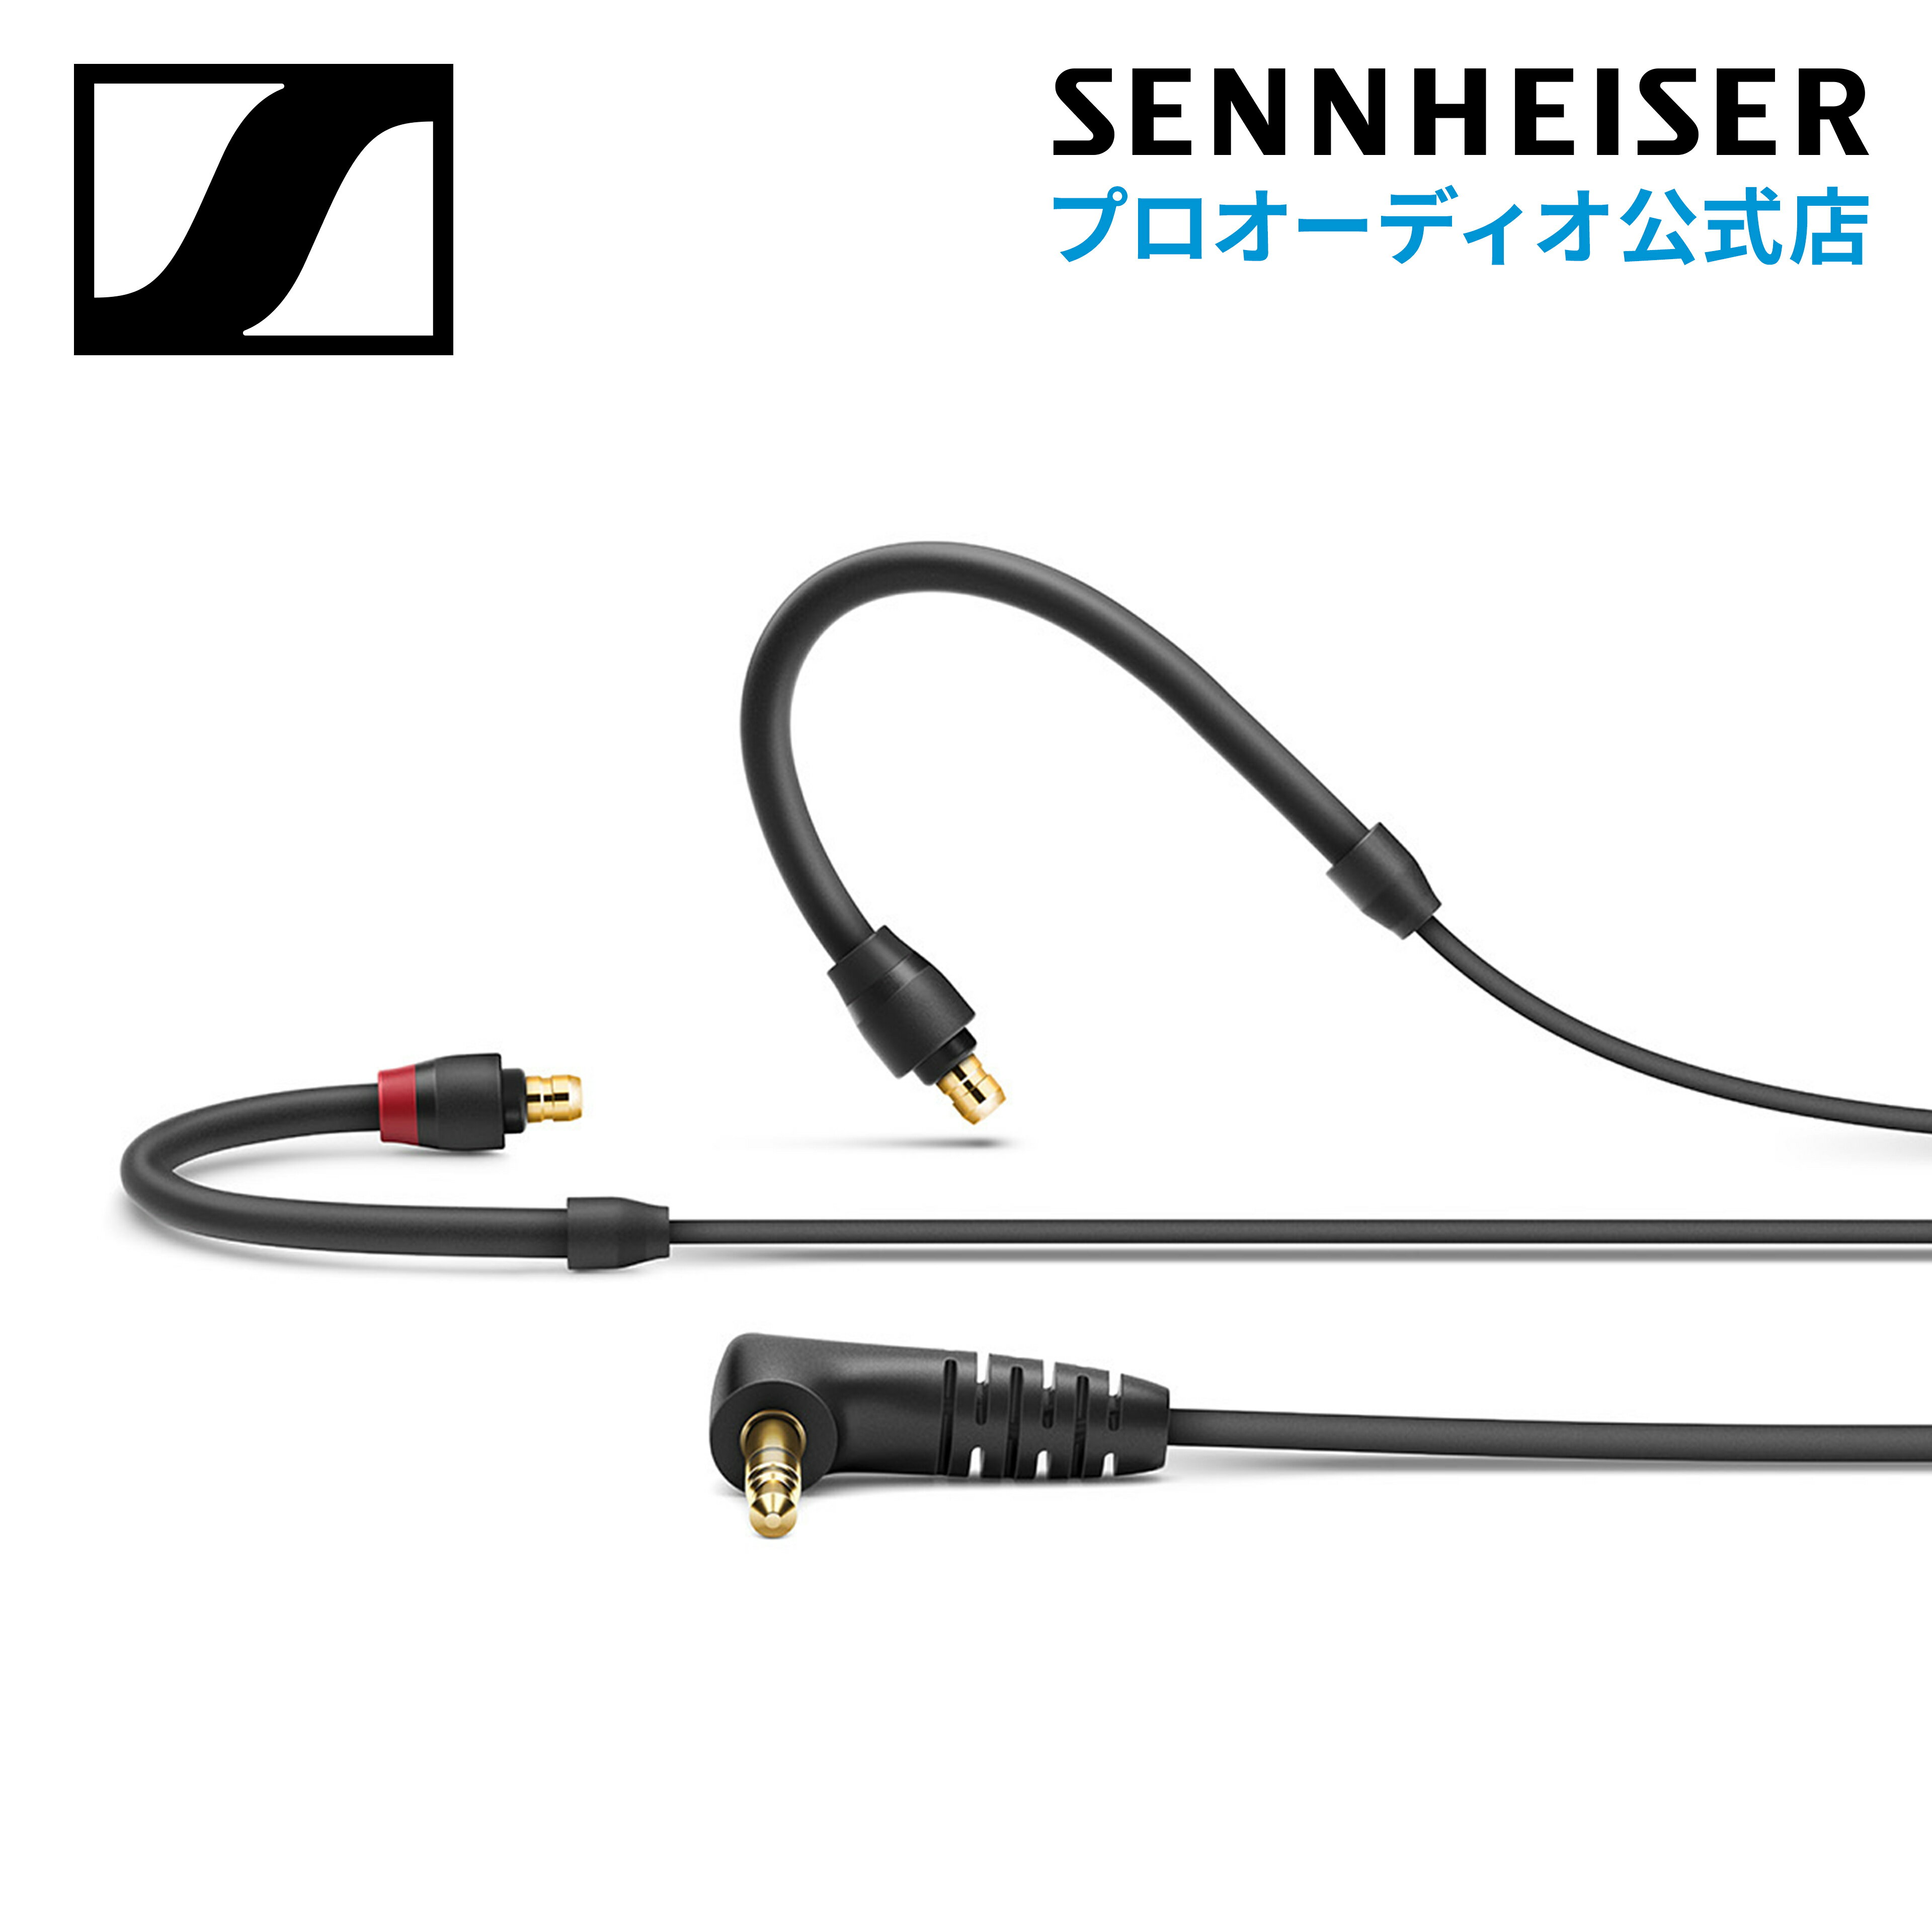 Sennheiser ゼンハイザー BLACK CABLE FOR IE 100/400/500 IE 100/400/500用ストレートケーブル黒  508584 メーカー保証2年 送料無料 ライブステージ ミュージシャン クリエーター ゲーミング